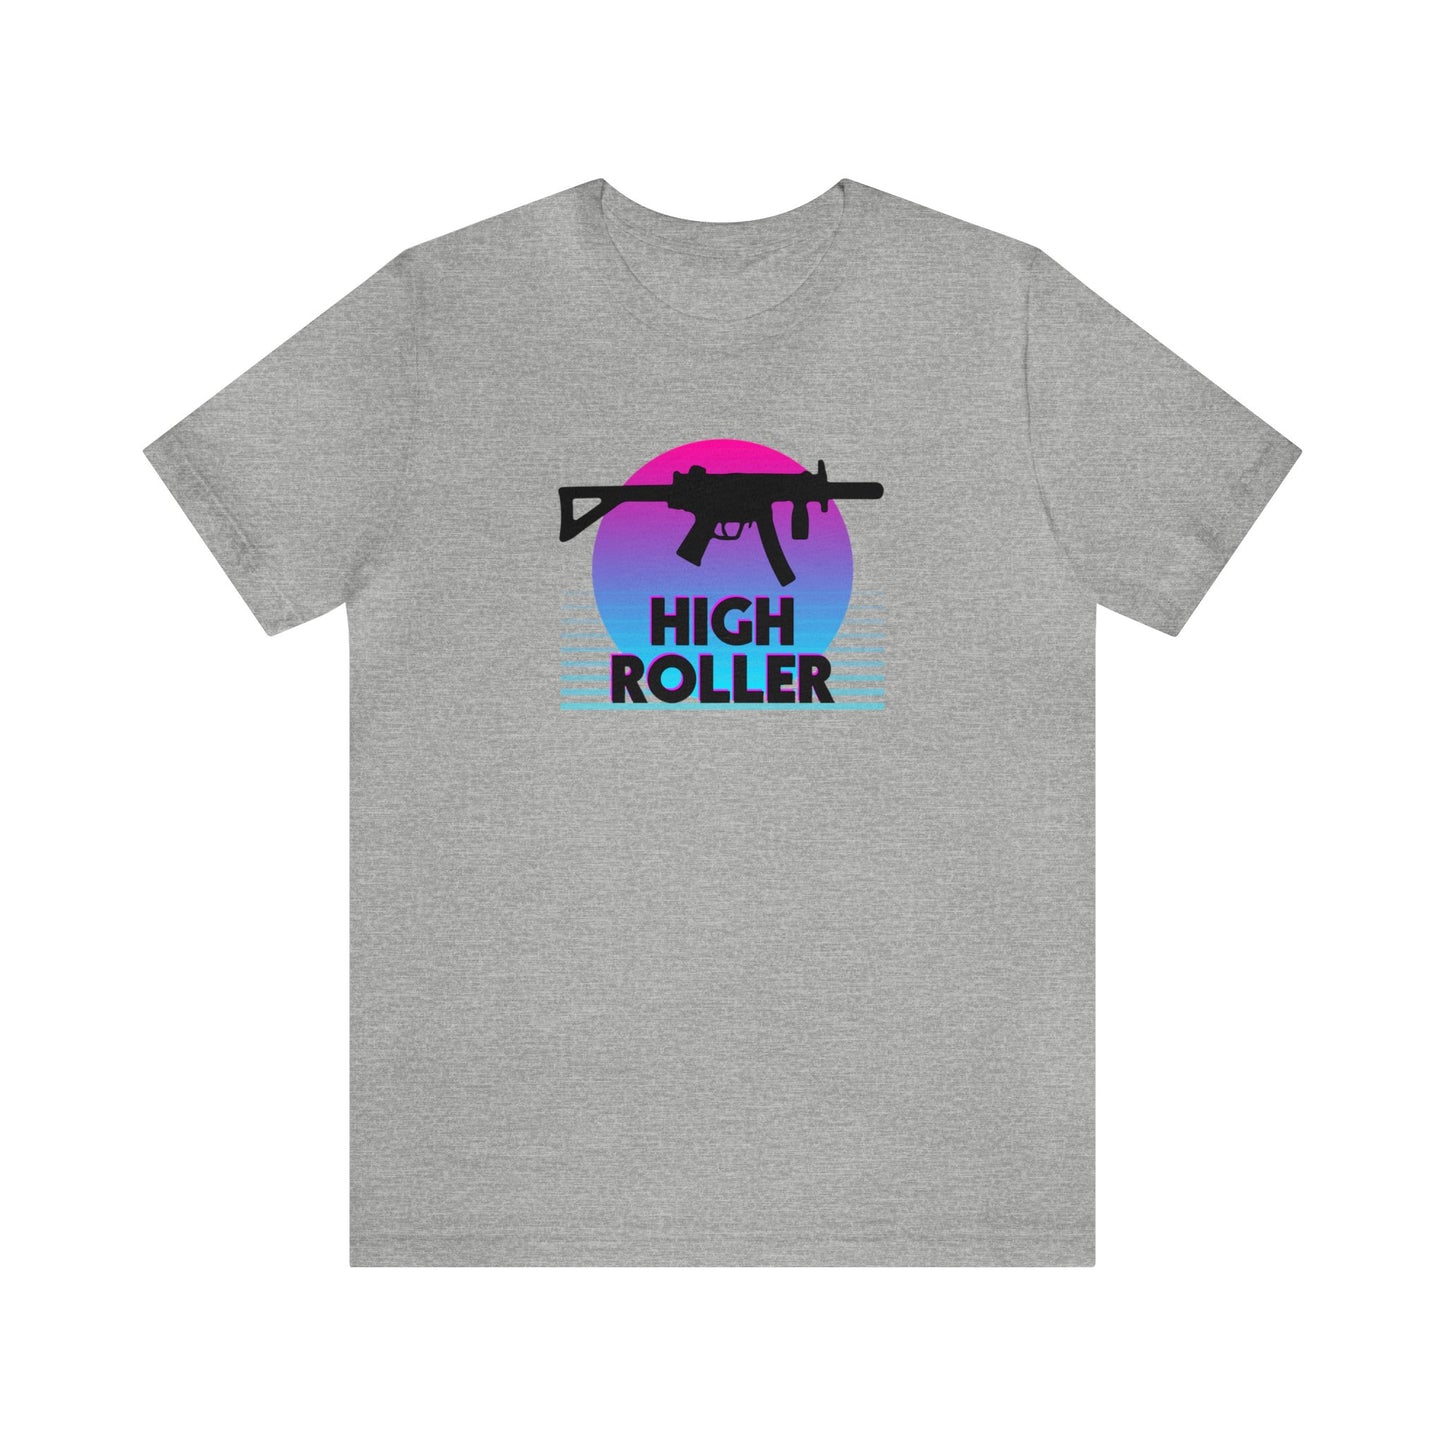 HIGH ROLLER MP5K-PDW Shirt - Pink/Blue